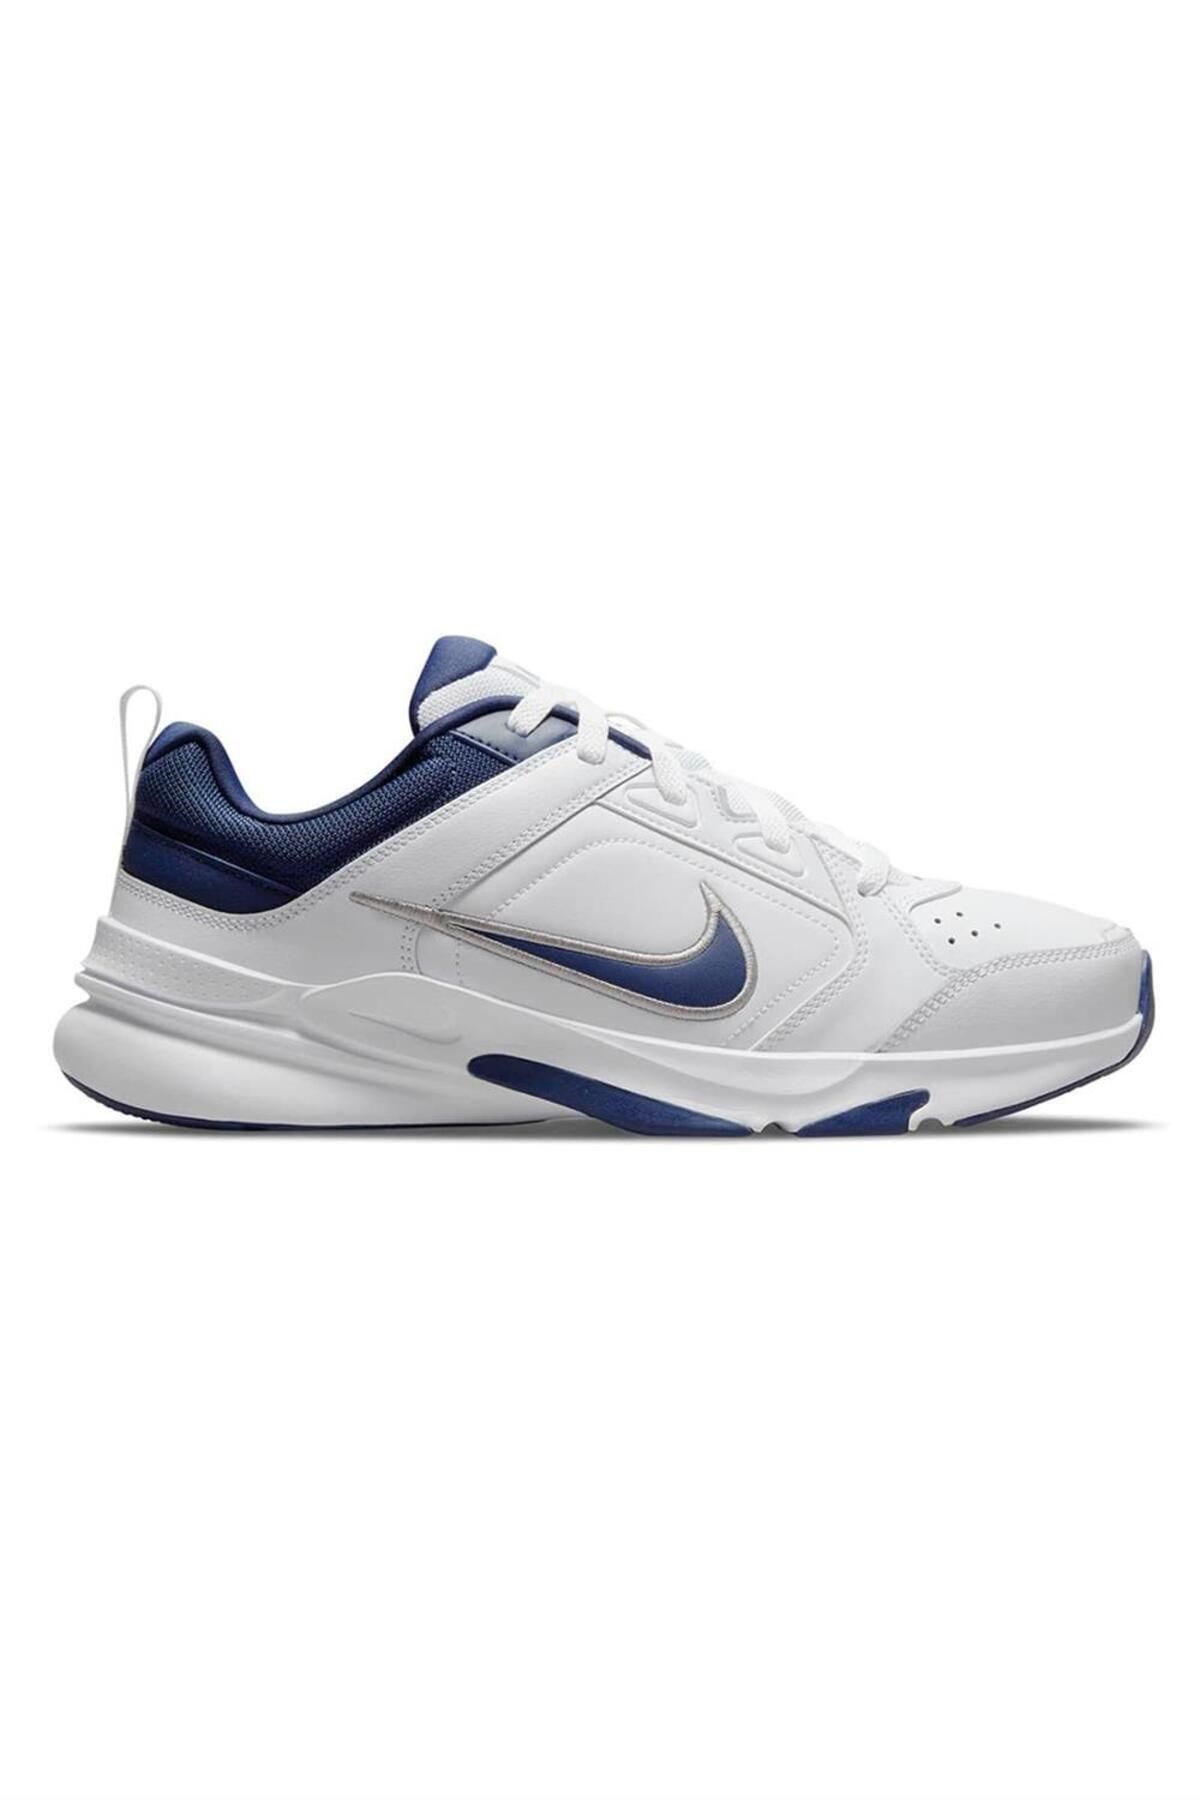 Nike Defyallday Beyaz Unisex Spor Ayakkabı Dj1196-100